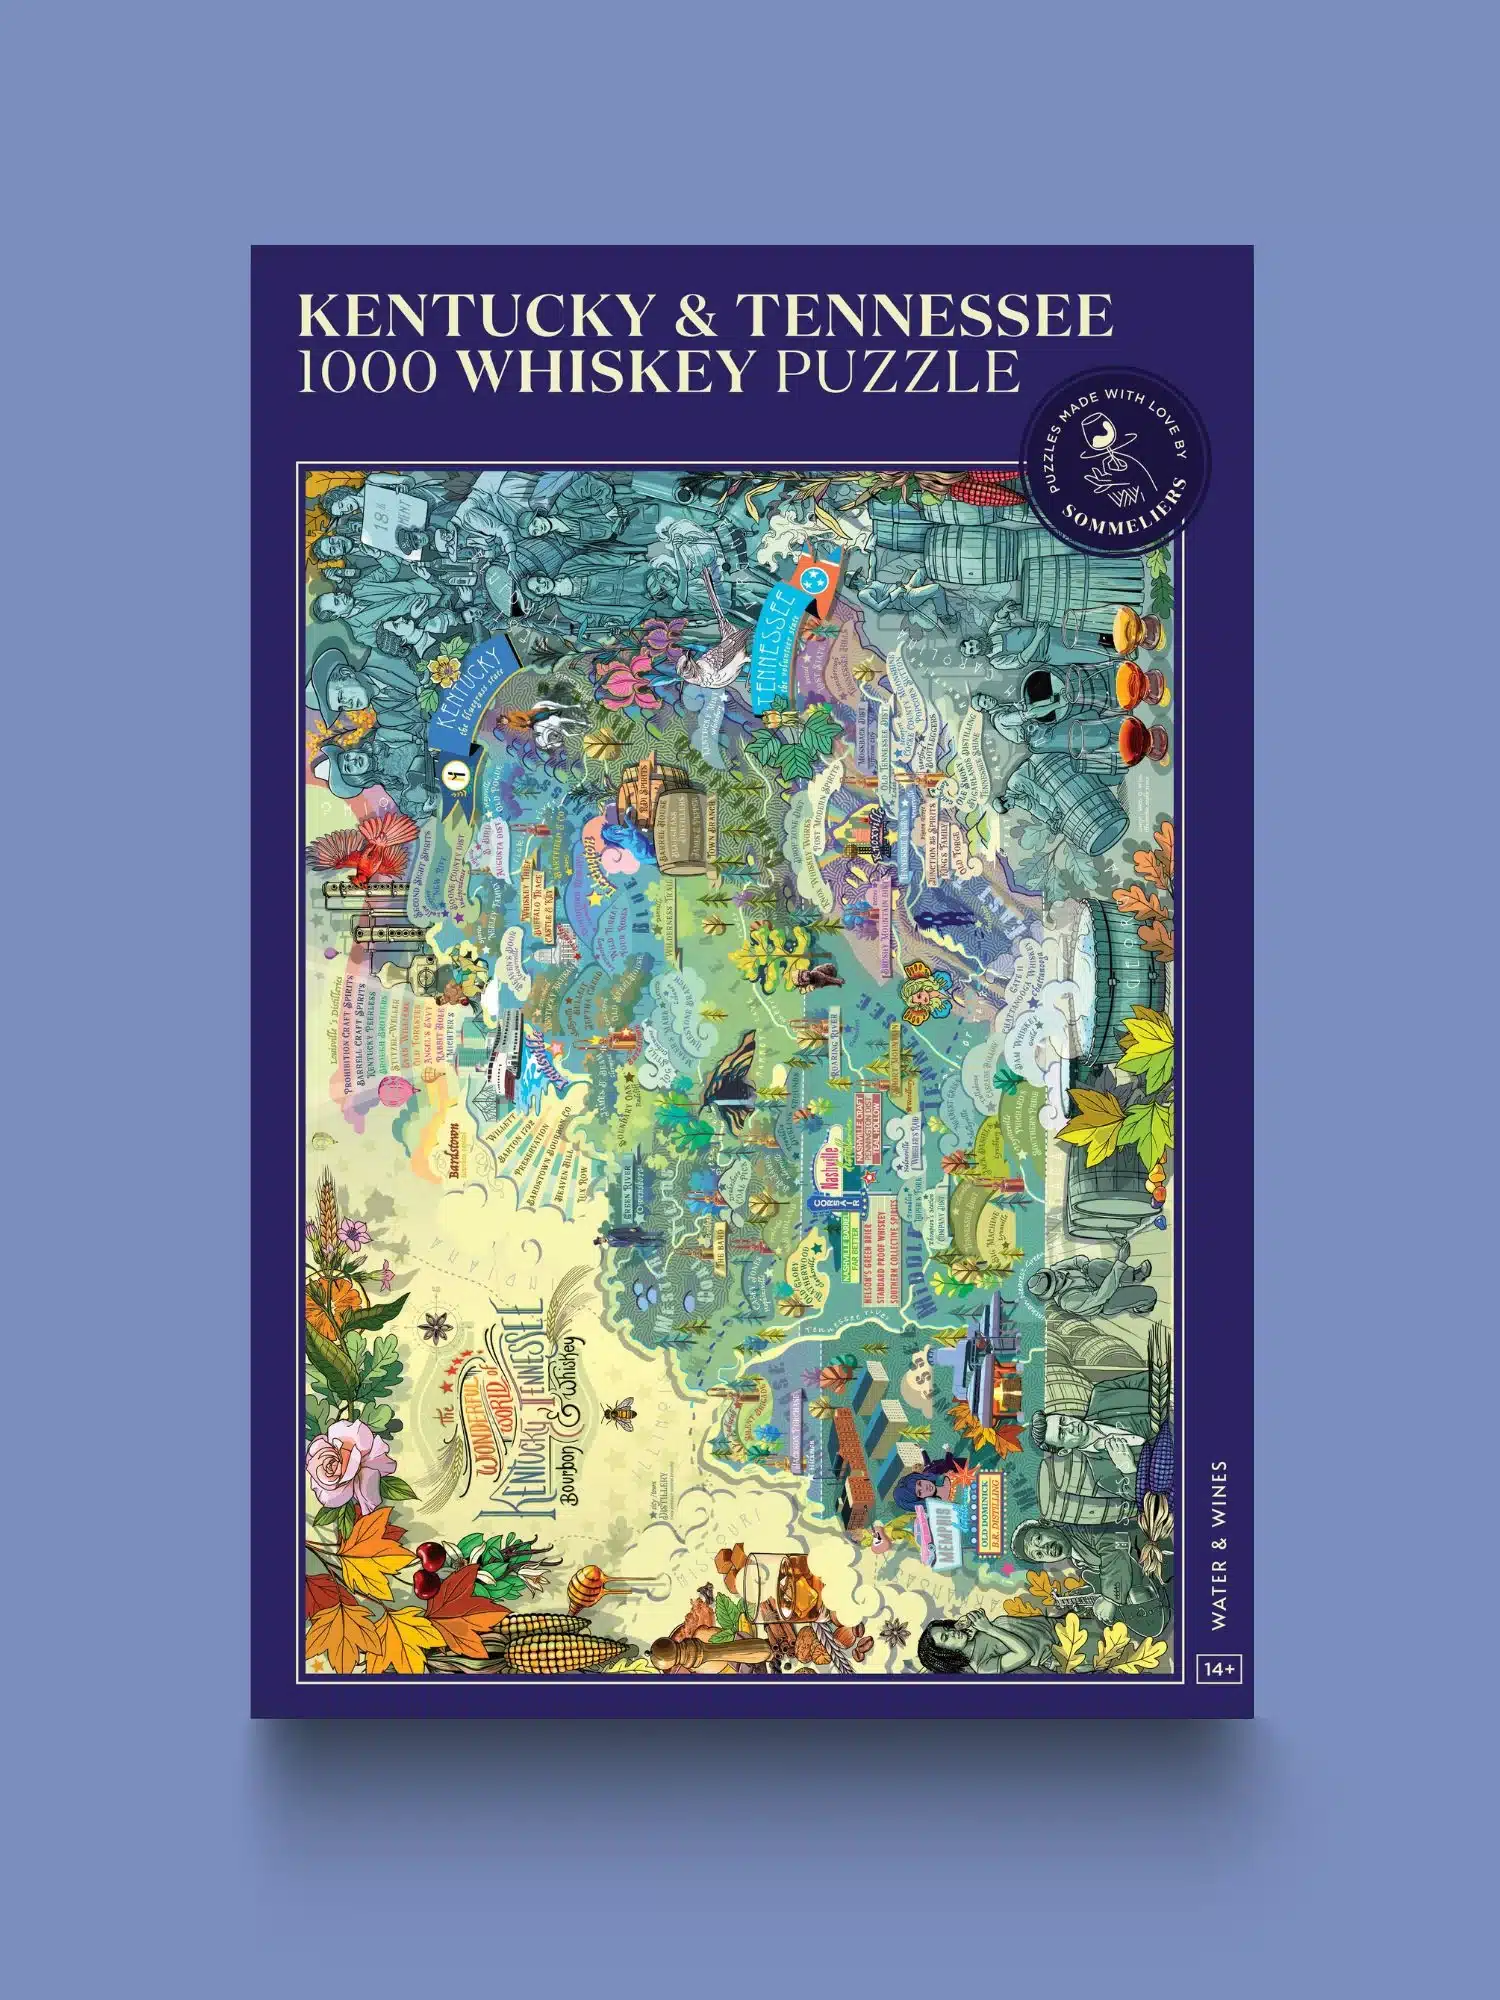 Omslagsbild för “Whiskey Puzzle Kentucky & Tennessee 1000 bitar”